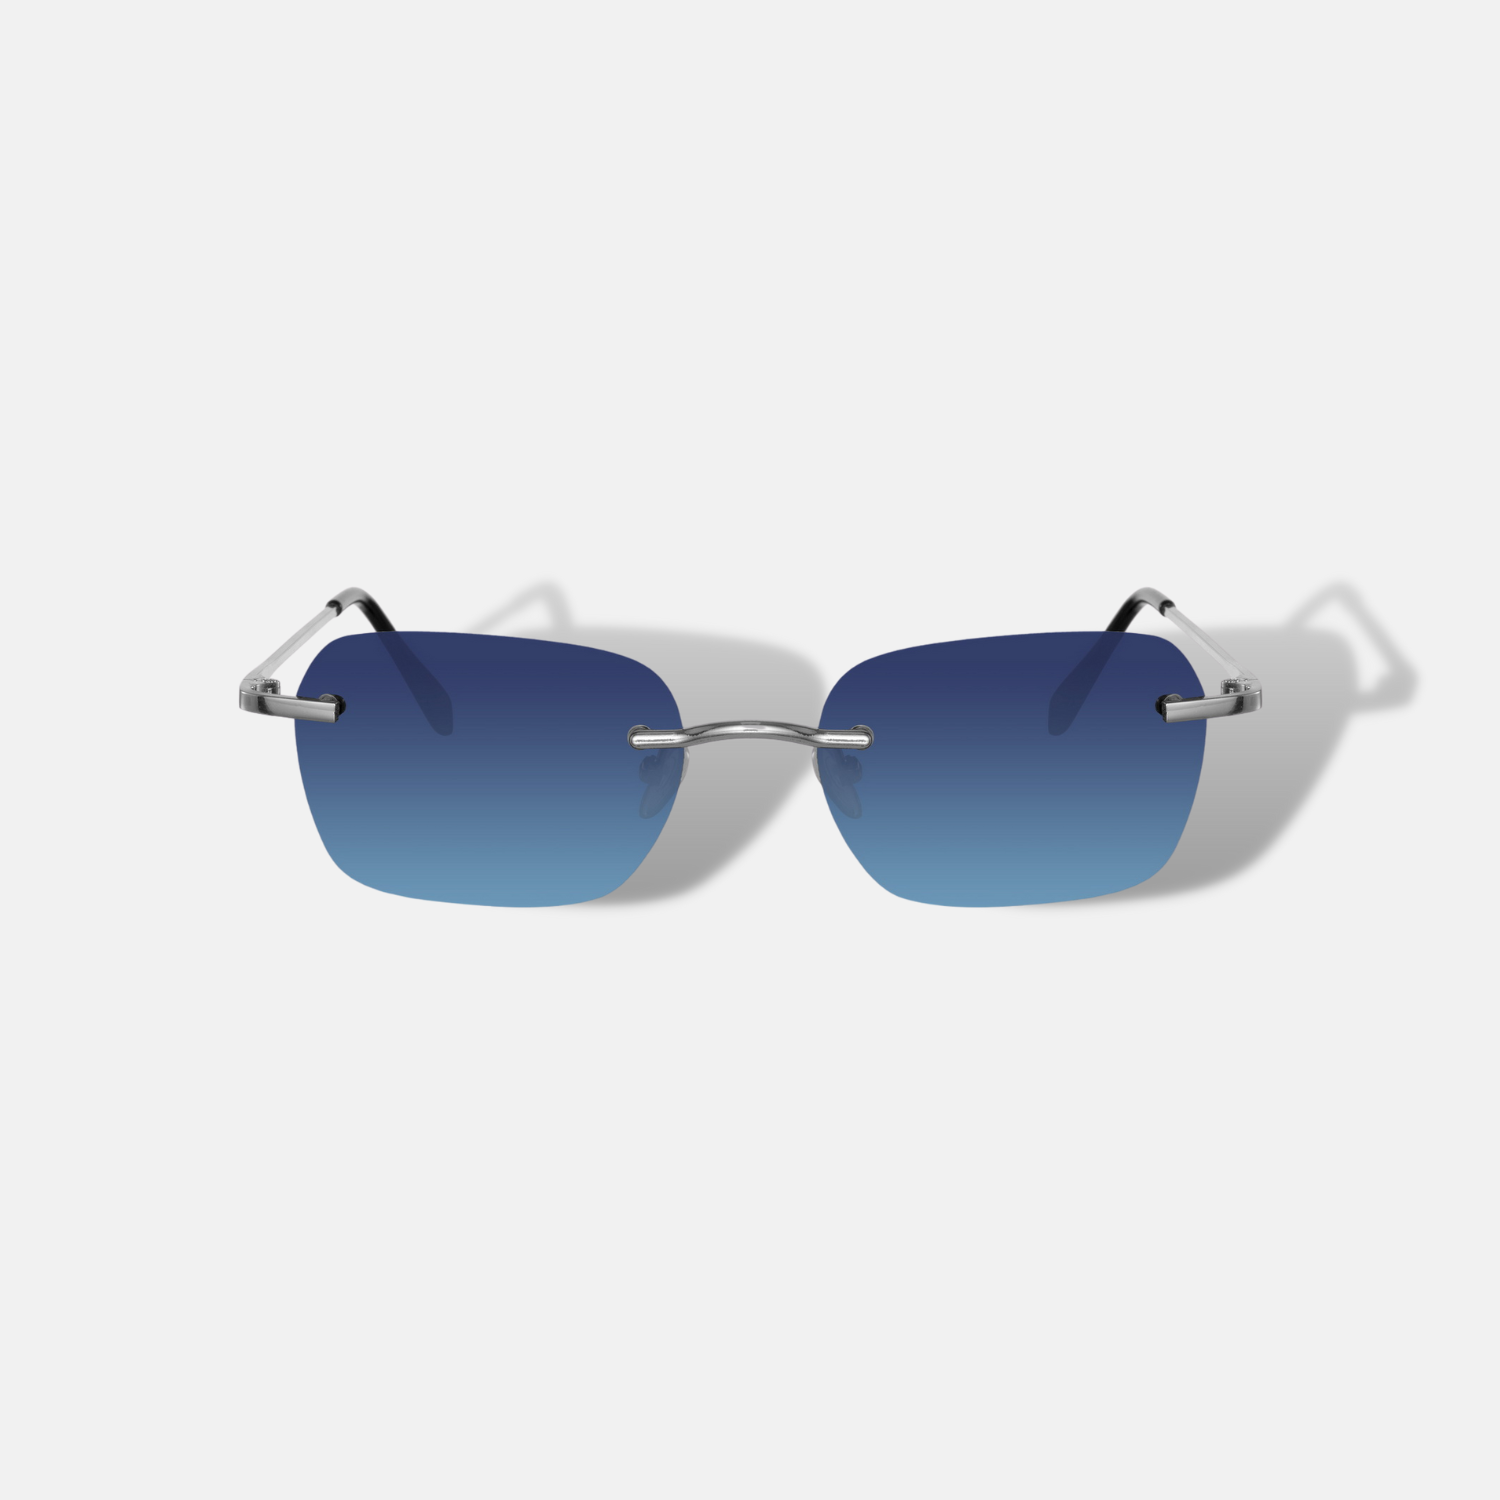 Unsere Sonnenbrille bietet hervorragenden Schutz vor schädlichen UV-Strahlen und vereint dabei Komfort und stilvolles Design. Mit der neuesten Kollektion bieten wir eine große Auswahl an hochwertigen und trendigen Sonnenbrillen für Damen und Herren